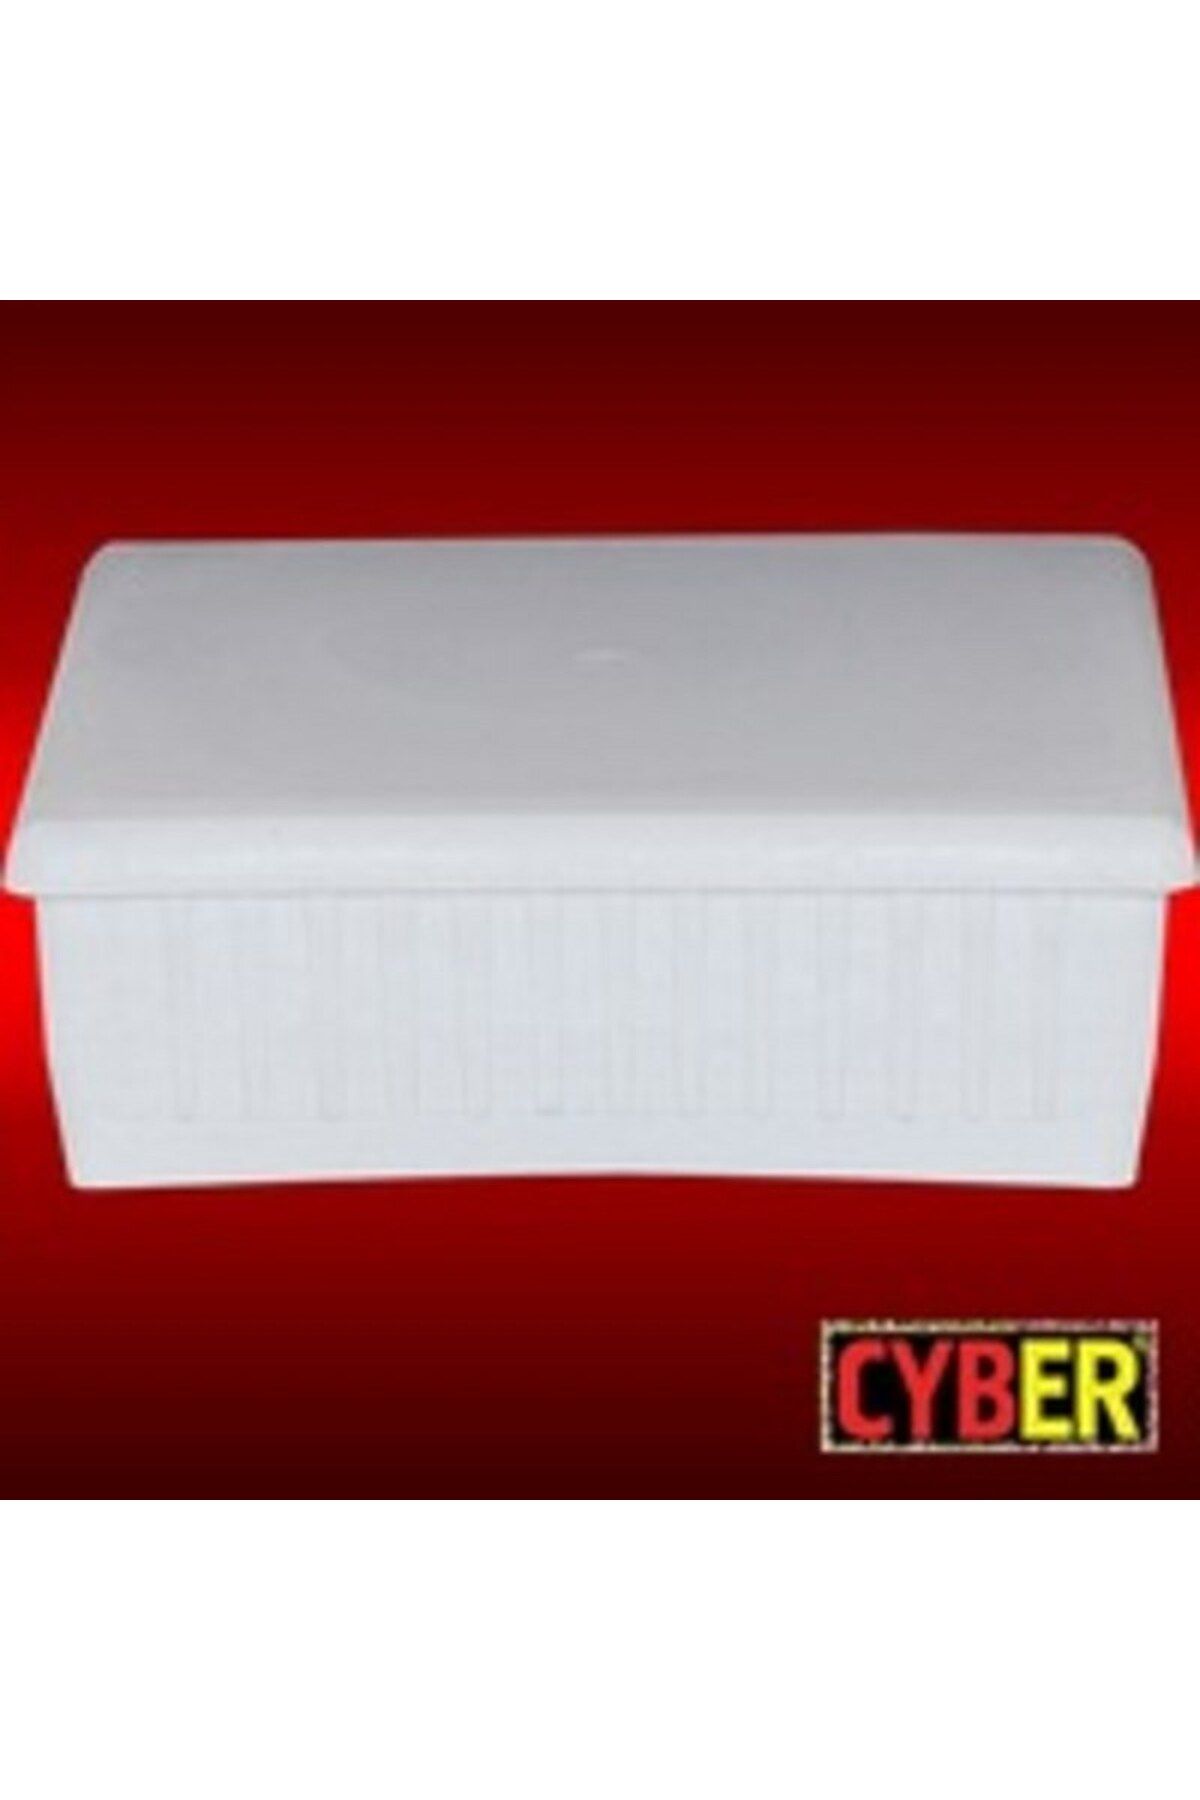 Cyber 100X100 Plastik Iç Tapa Beyaz